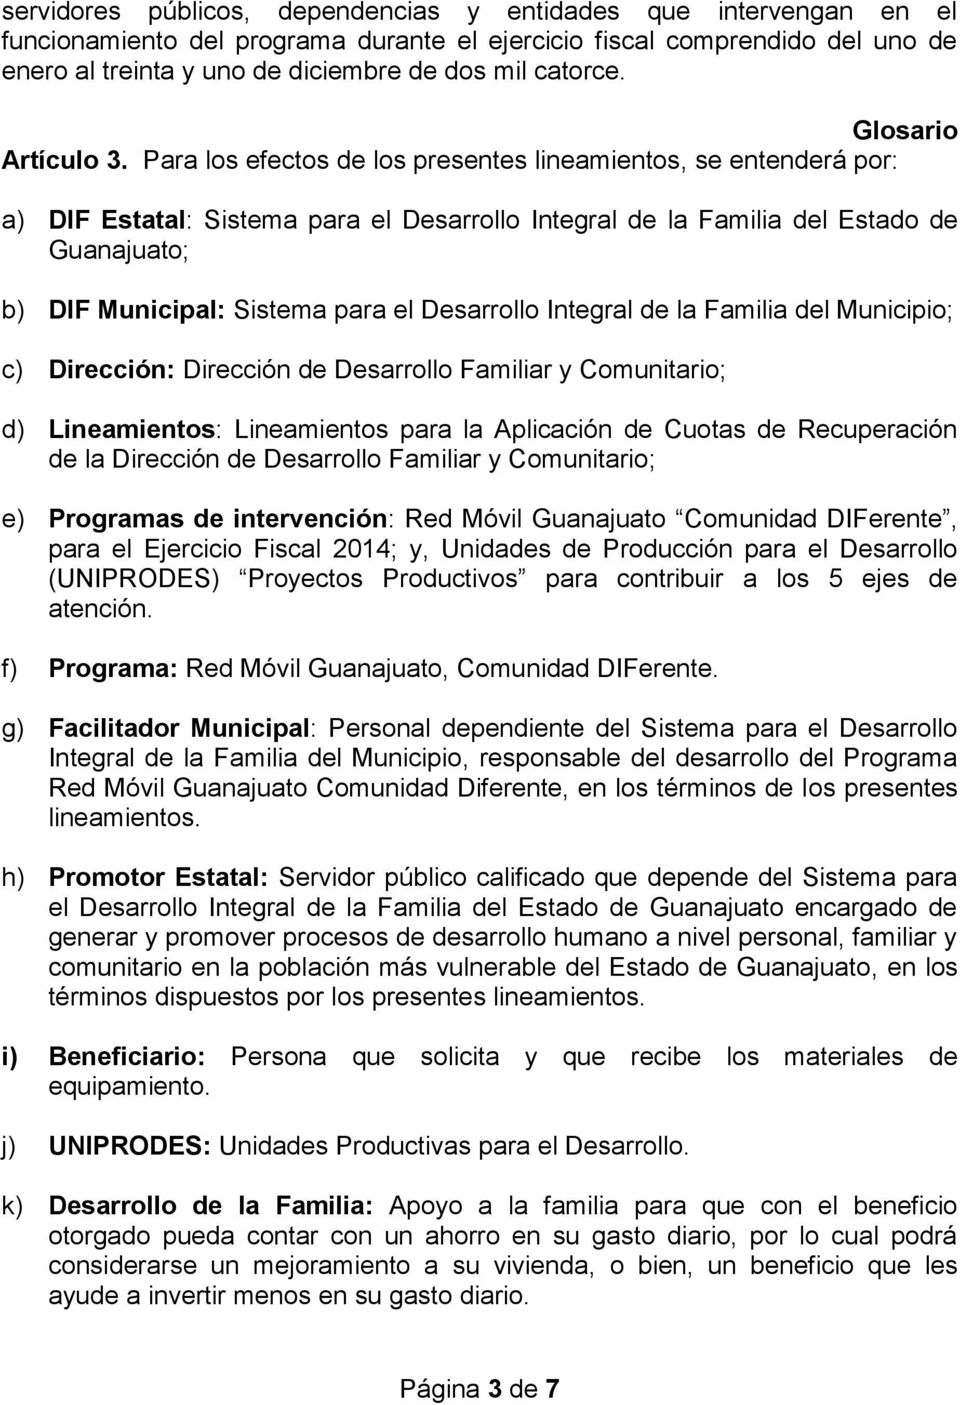 Para los efectos de los presentes lineamientos, se entenderá por: a) DIF Estatal: Sistema para el Desarrollo Integral de la Familia del Estado de Guanajuato; b) DIF Municipal: Sistema para el